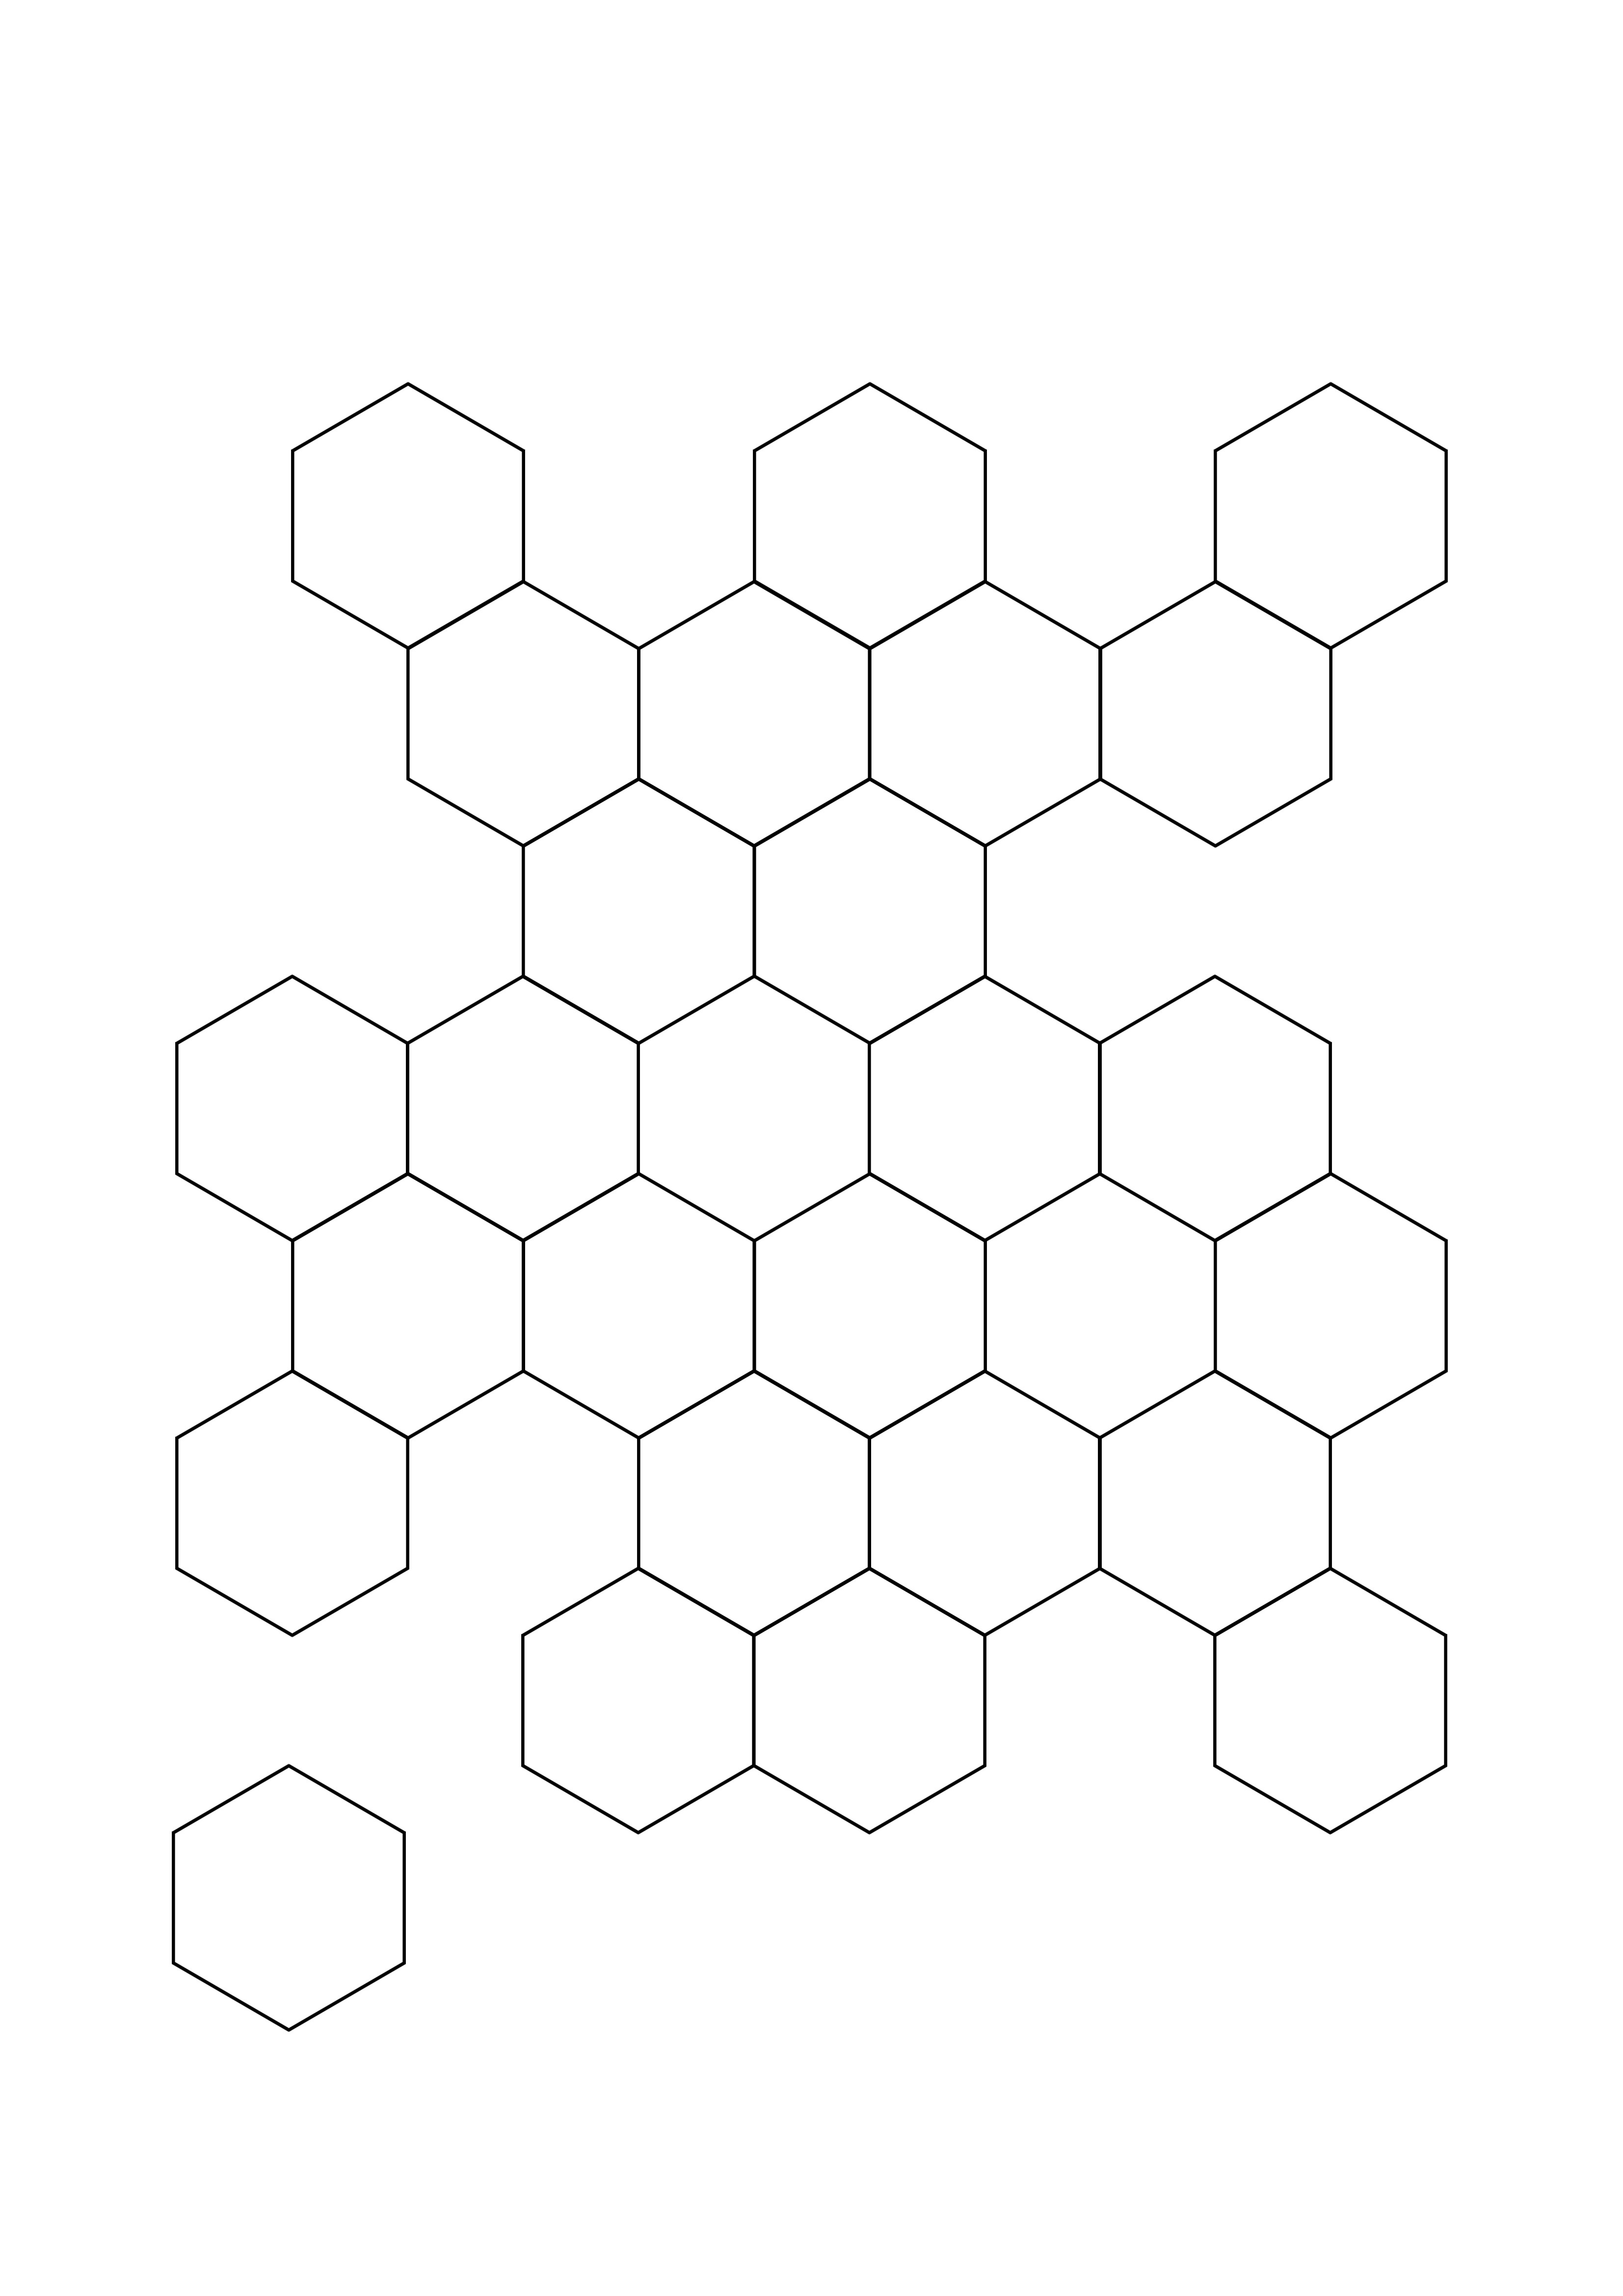 Hexagon Honeycomb Tessellation untuk dicetak atau diunduh secara gratis untuk lembar warna